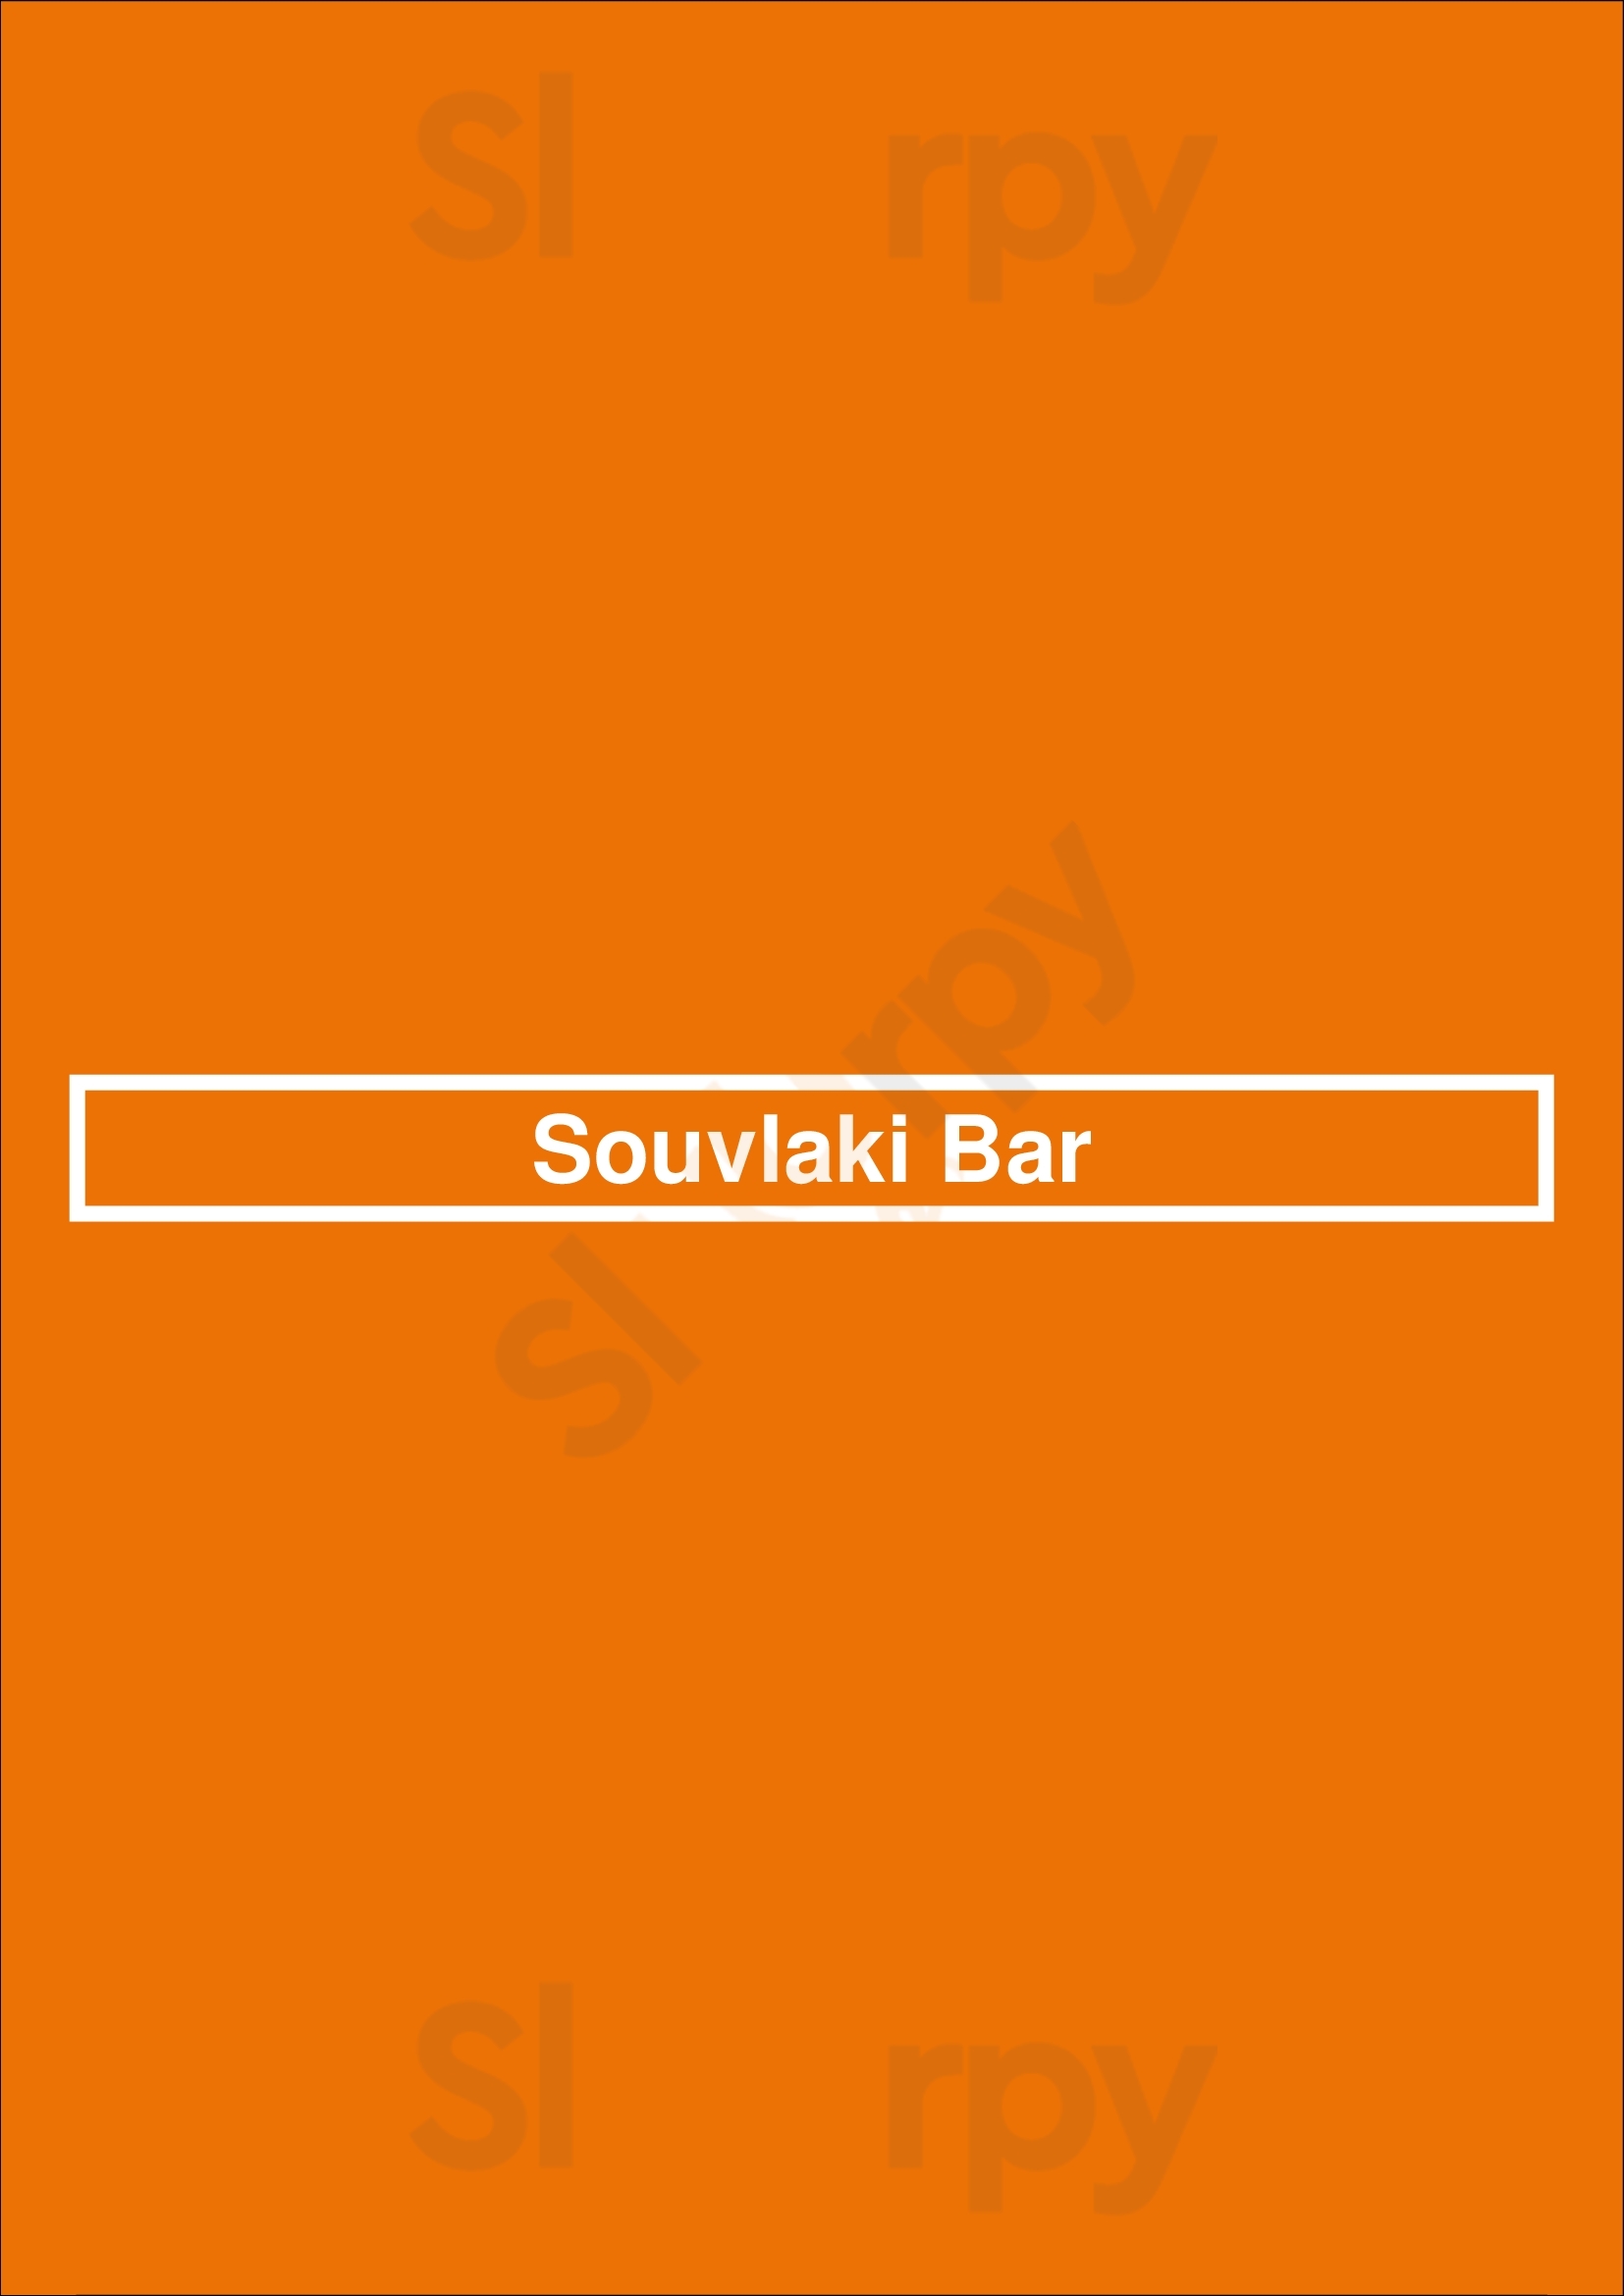 Souvlaki Bar Laval Menu - 1